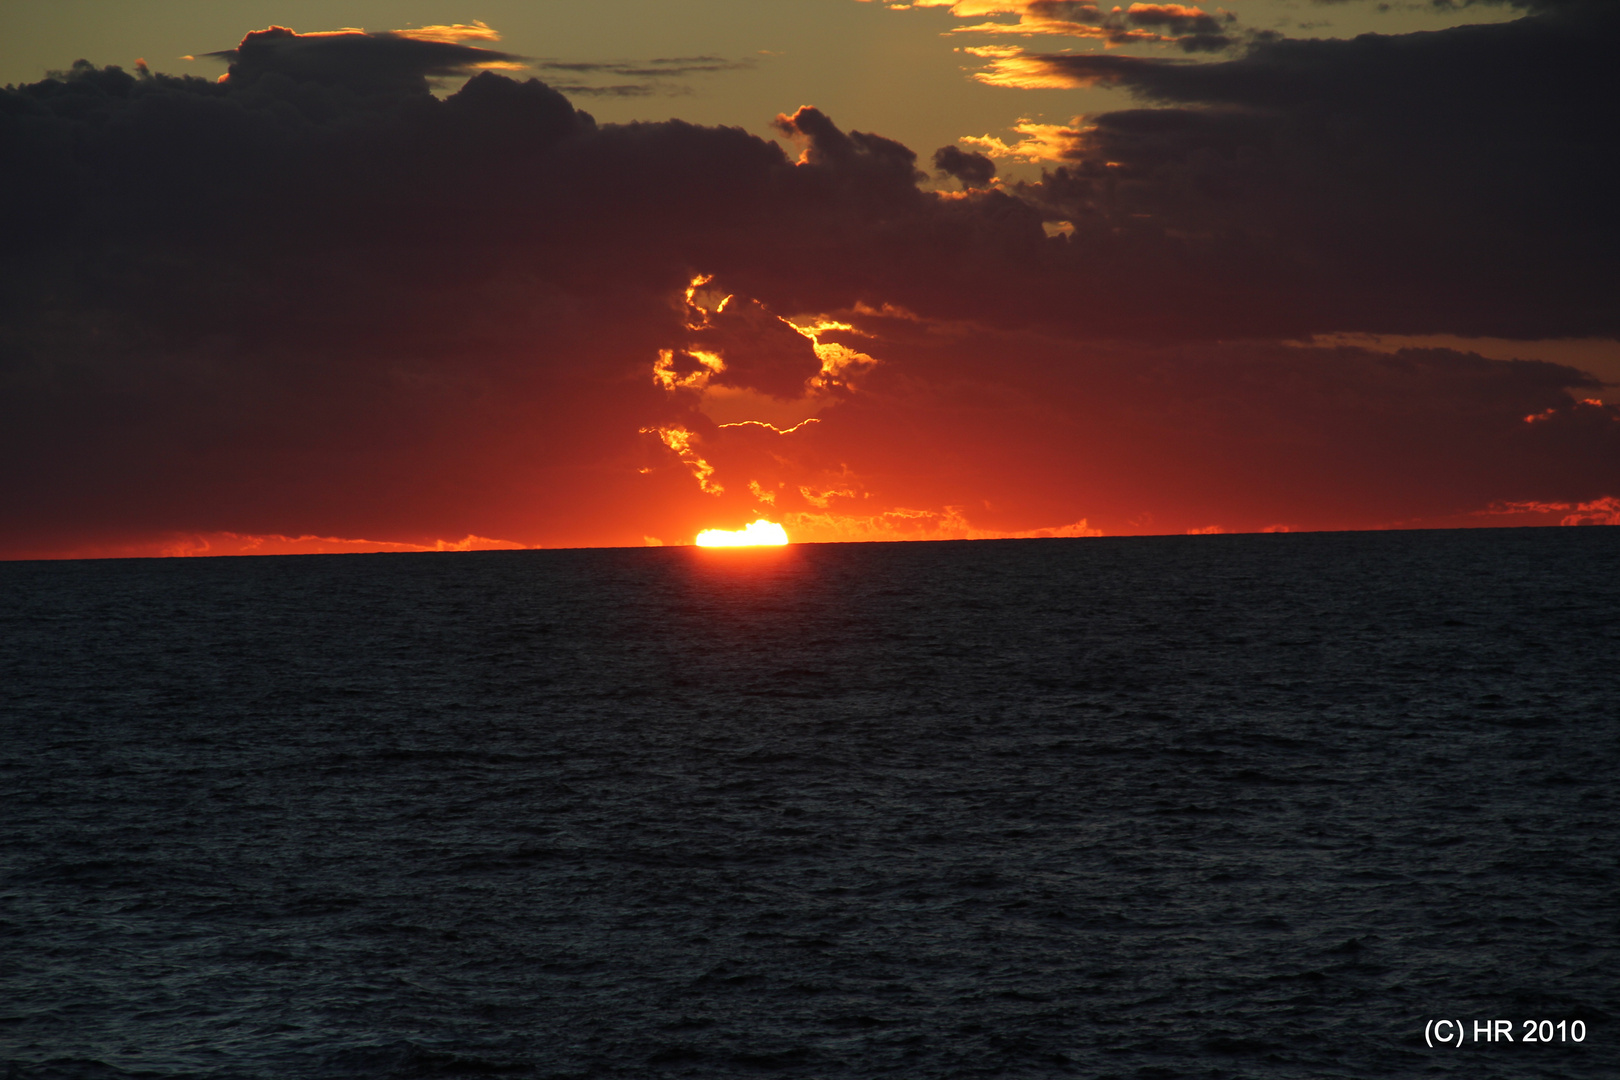 Mittelmeer: Sonnenuntergang am 2.12.2010 im Mittelmeer